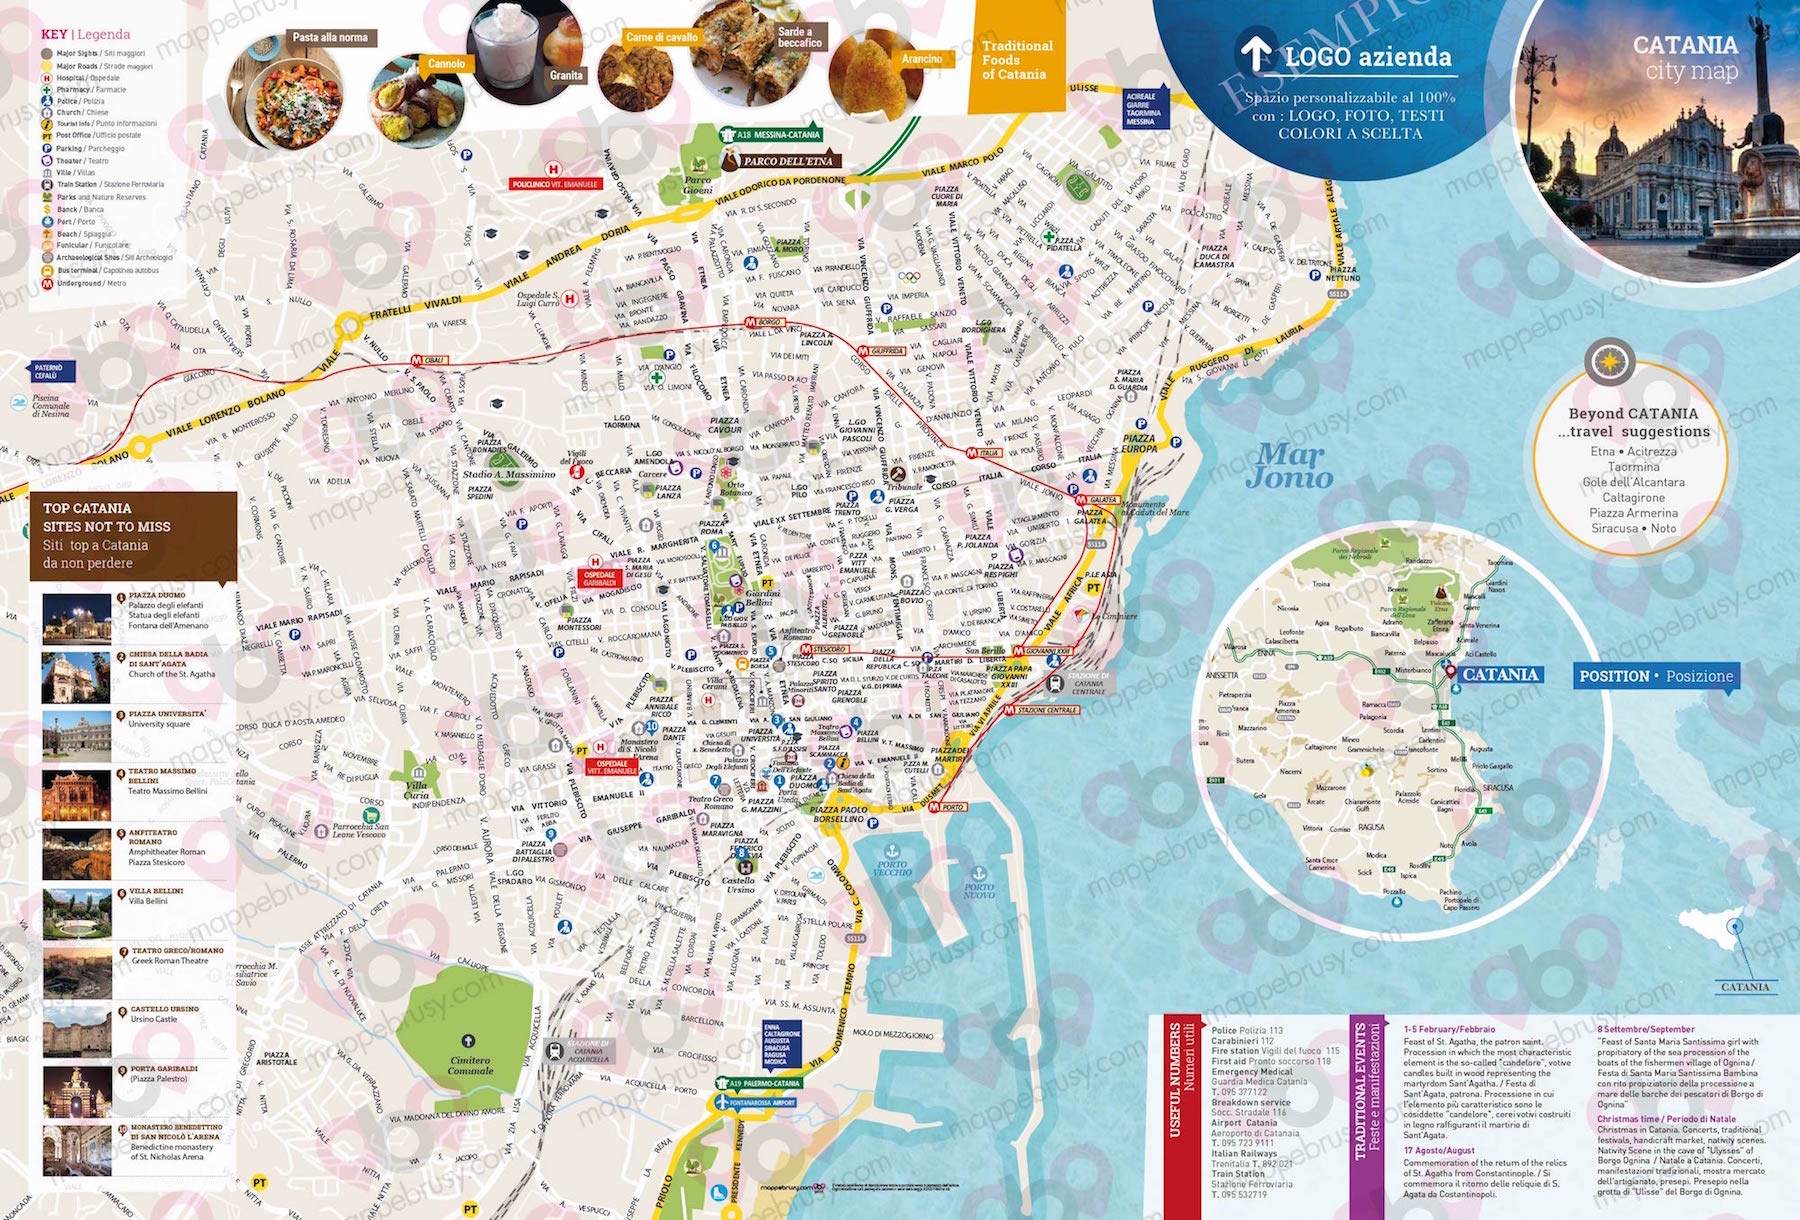 Mappa di Catania - Catania city map - mappa Catania - mappa personalizzata di Catania - mappa tursitica di Catania